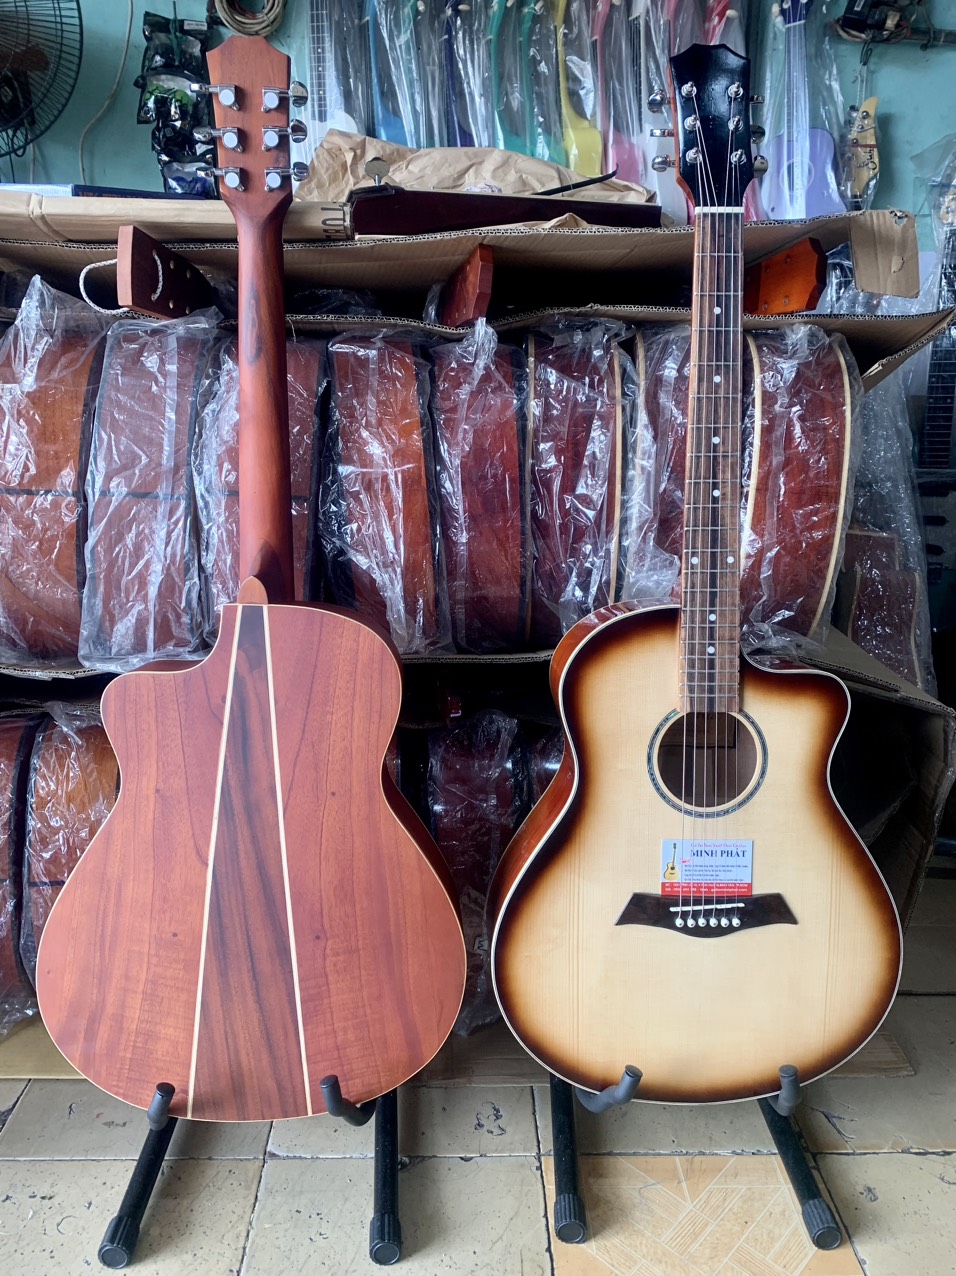 Xưởng bán đàn guitar ở TPHCM - Nhạc Cụ Minh Phát Khu vực quận Bình Tân